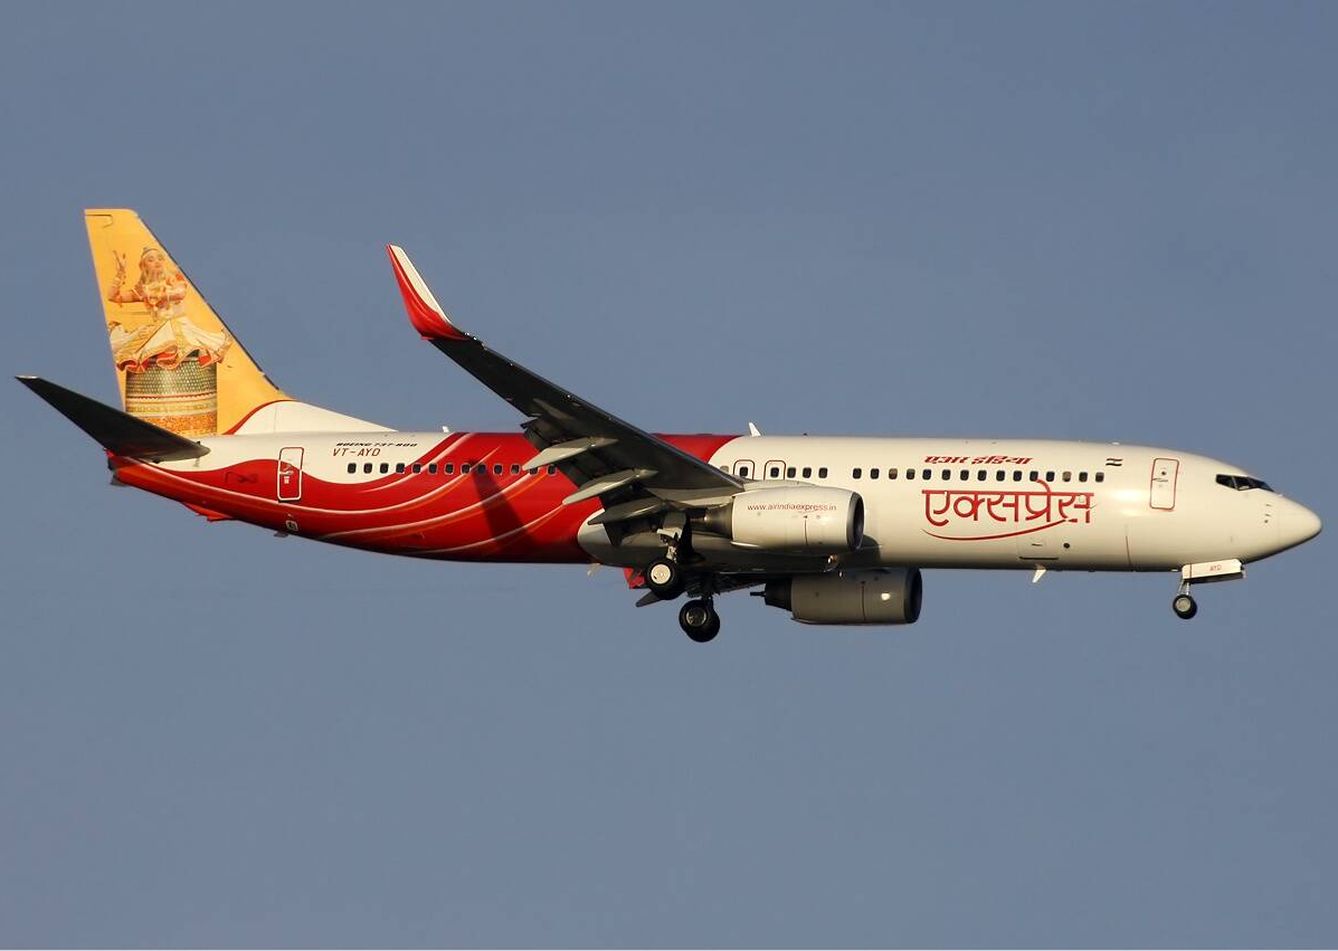 Un modelo de Air India como el del avión siniestrado. (Wikimedia Commons)